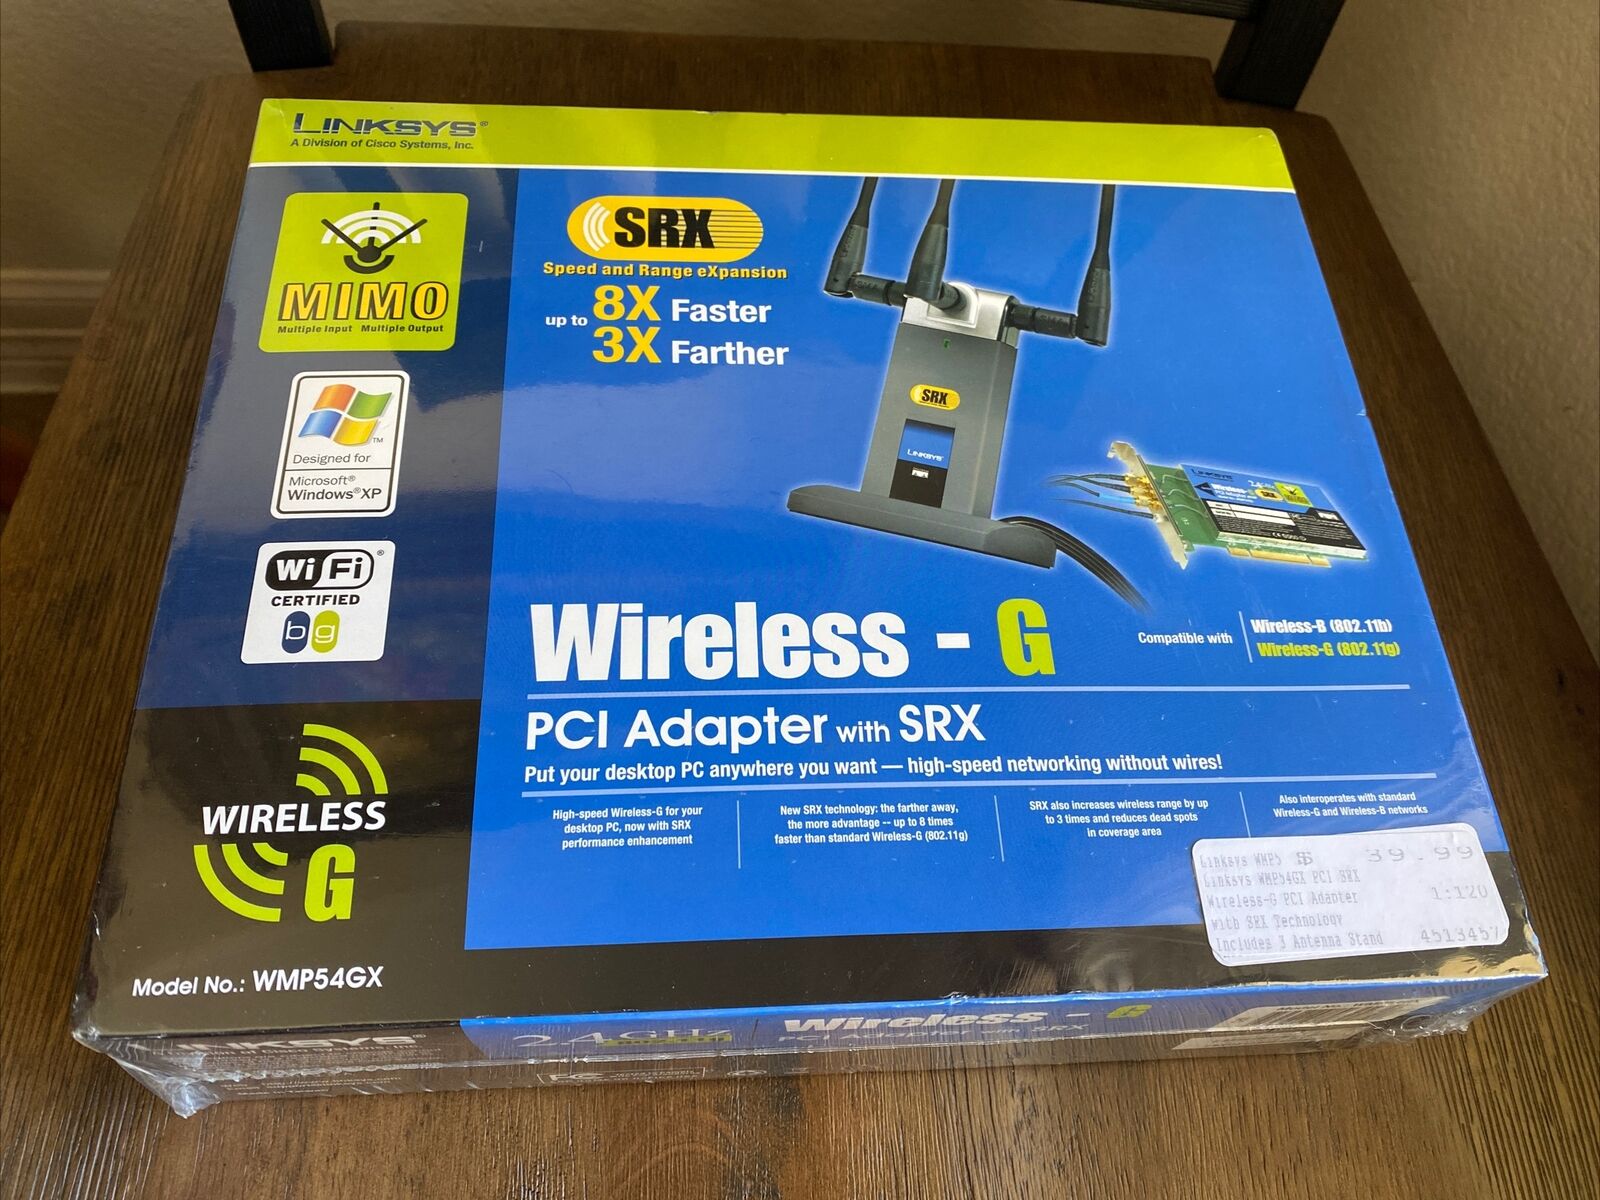 Cisco-Linksys WMP54GX Wireless G PCI Adapter with SRX 